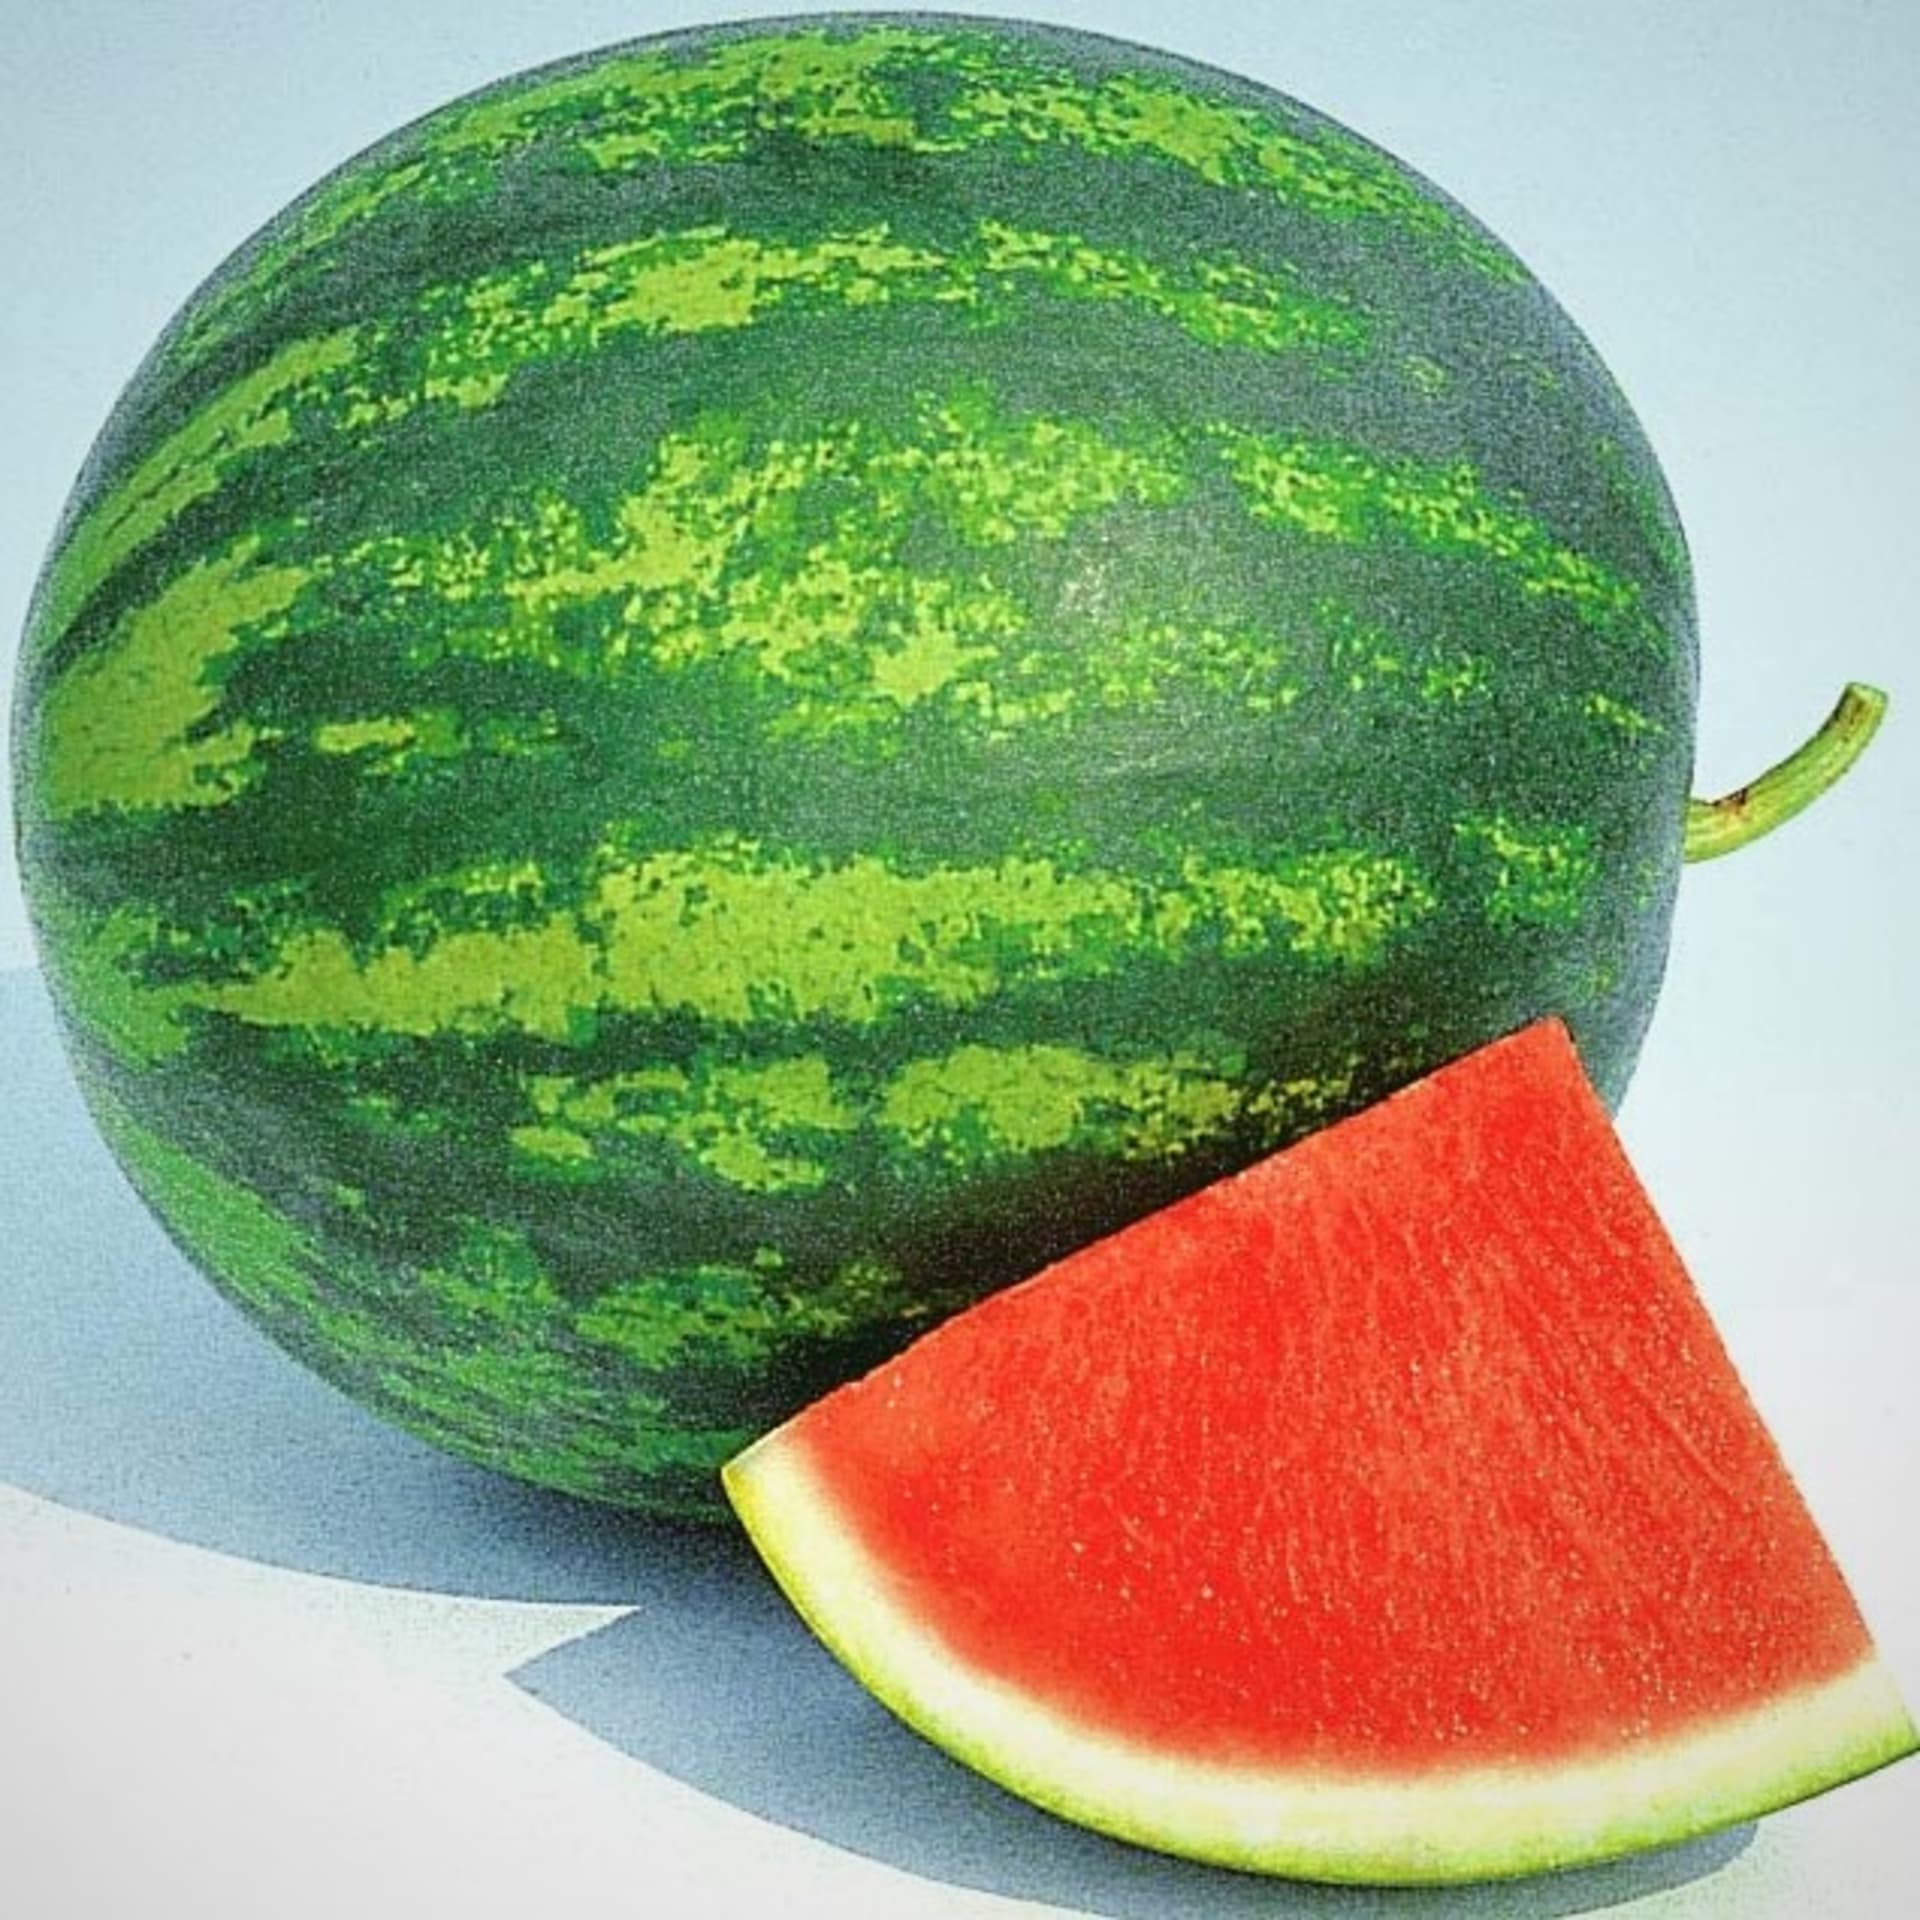 Bezzsemenný vodní meloun Granate F1 je lahodná hybridní odrůda triploidního melounu, který netvoří semena.